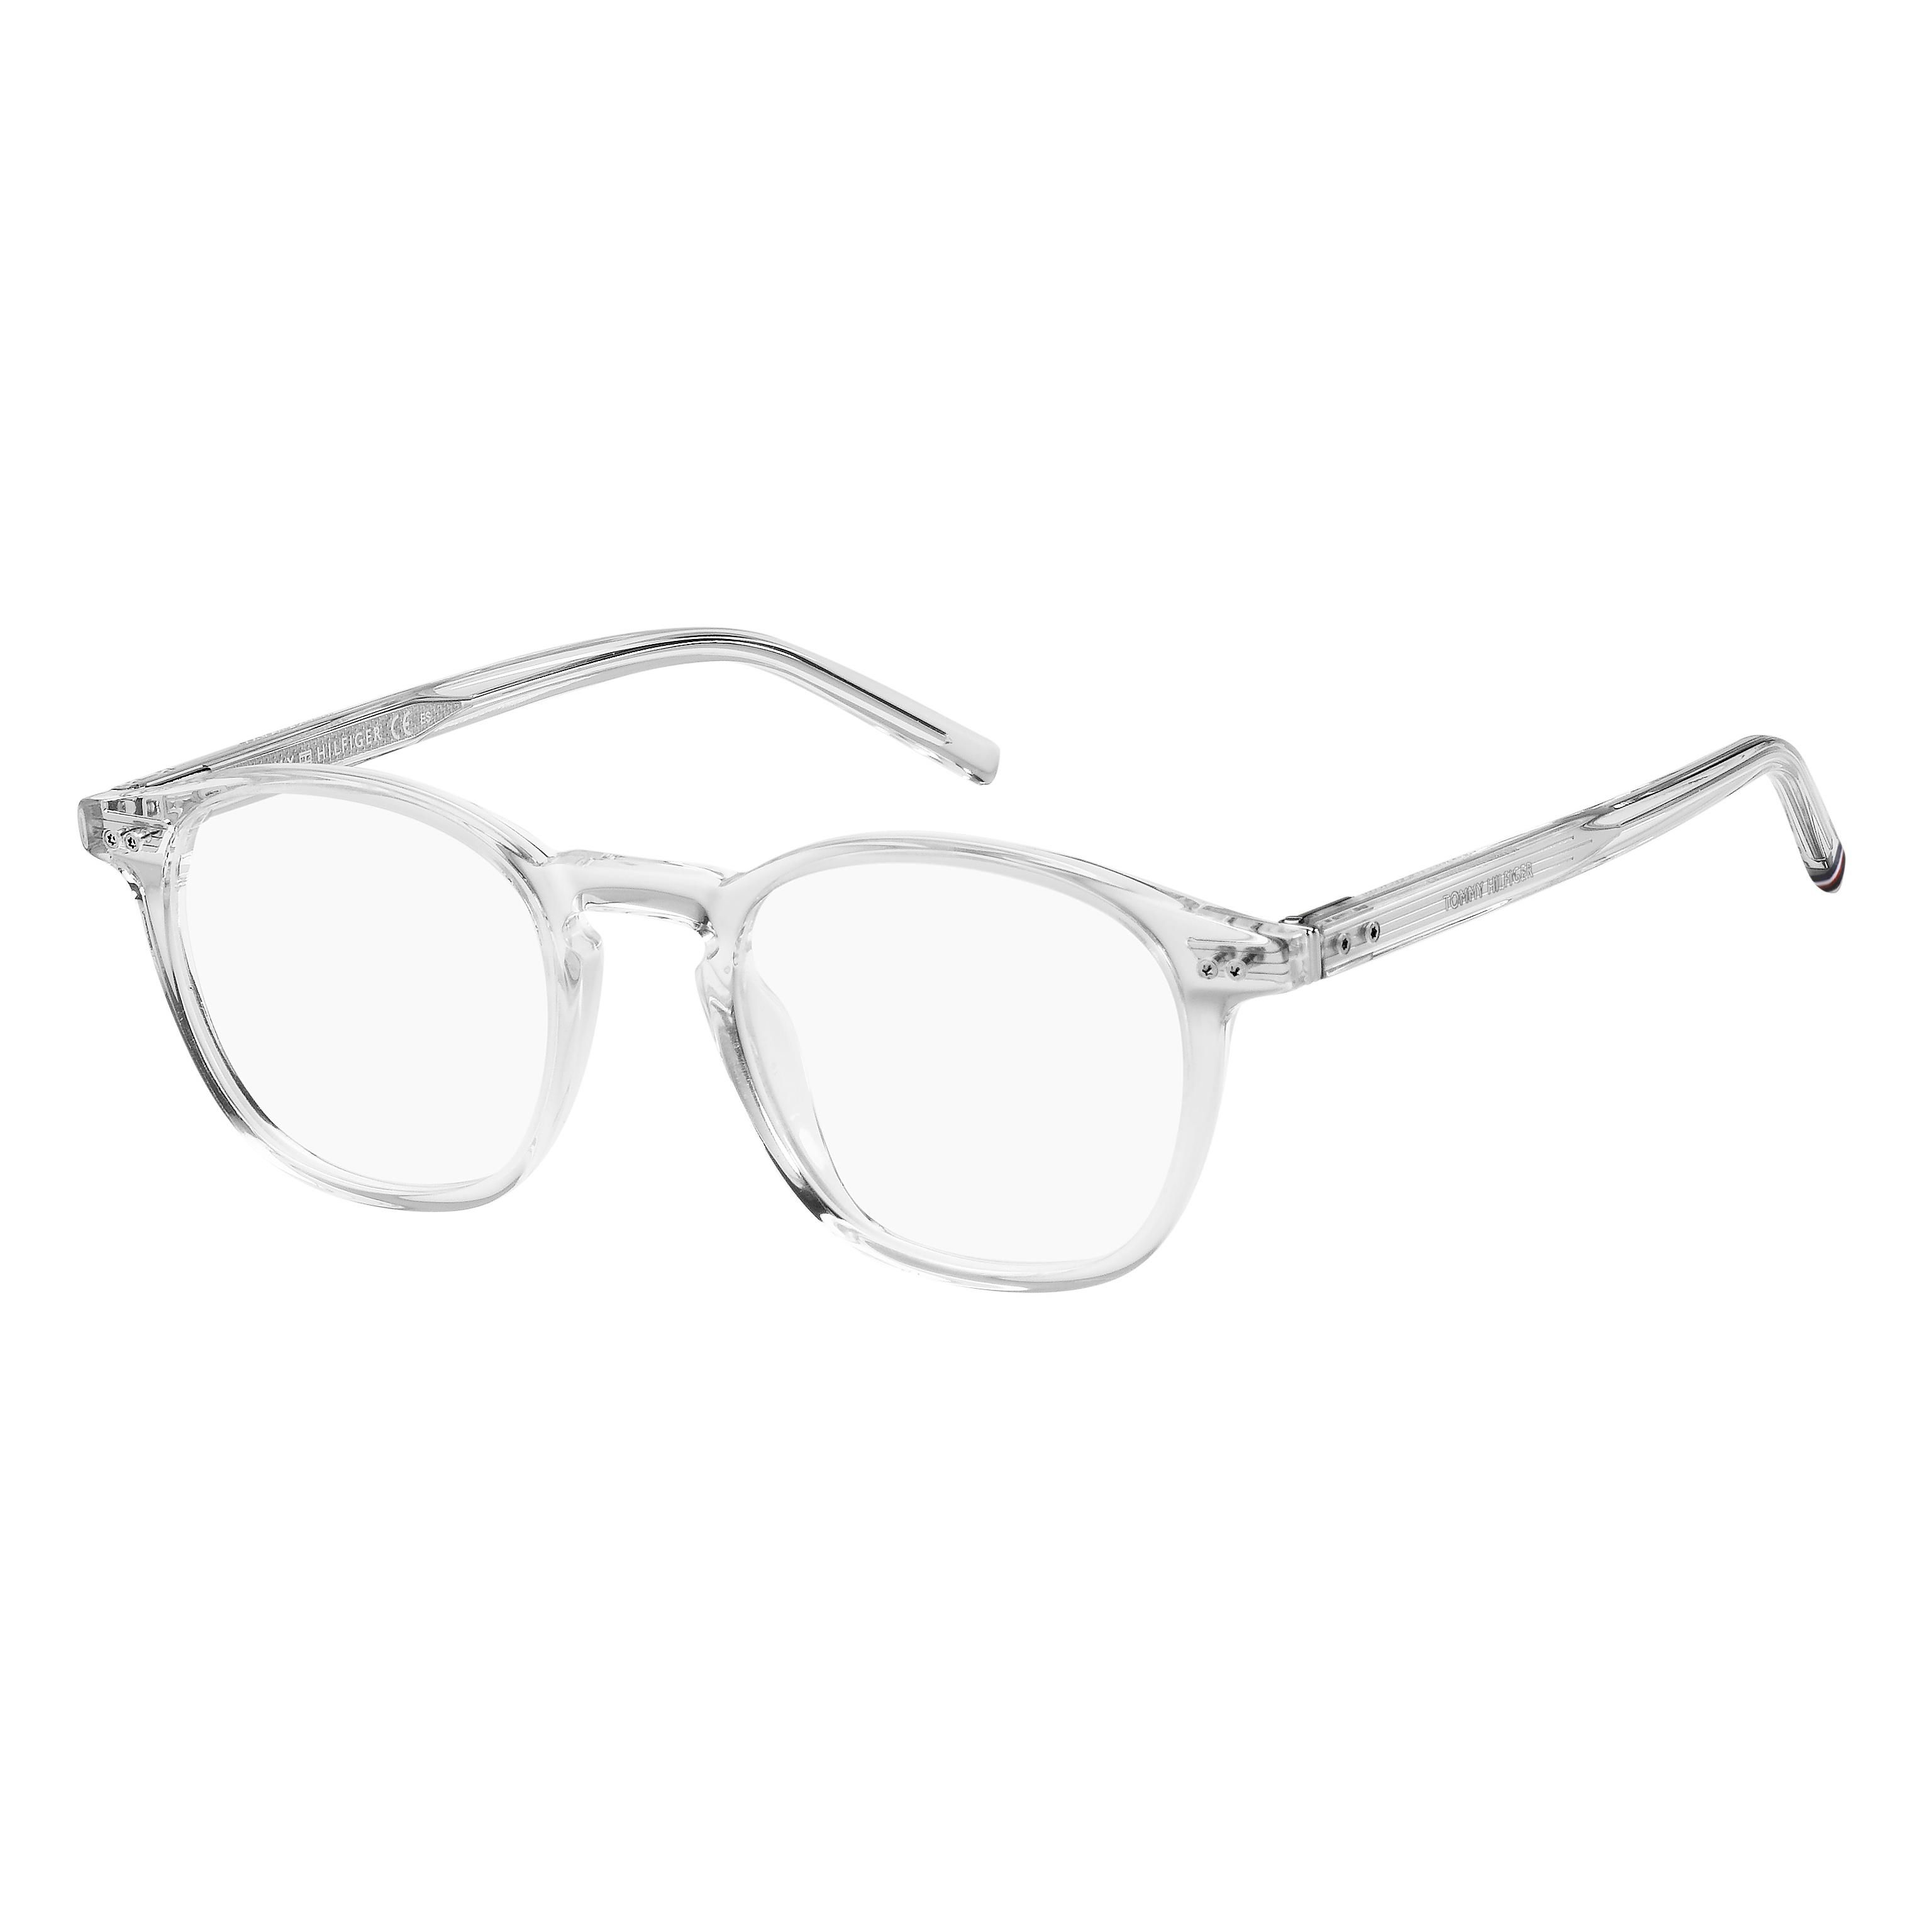 TH 1941 Round Eyeglasses 900 - size 48